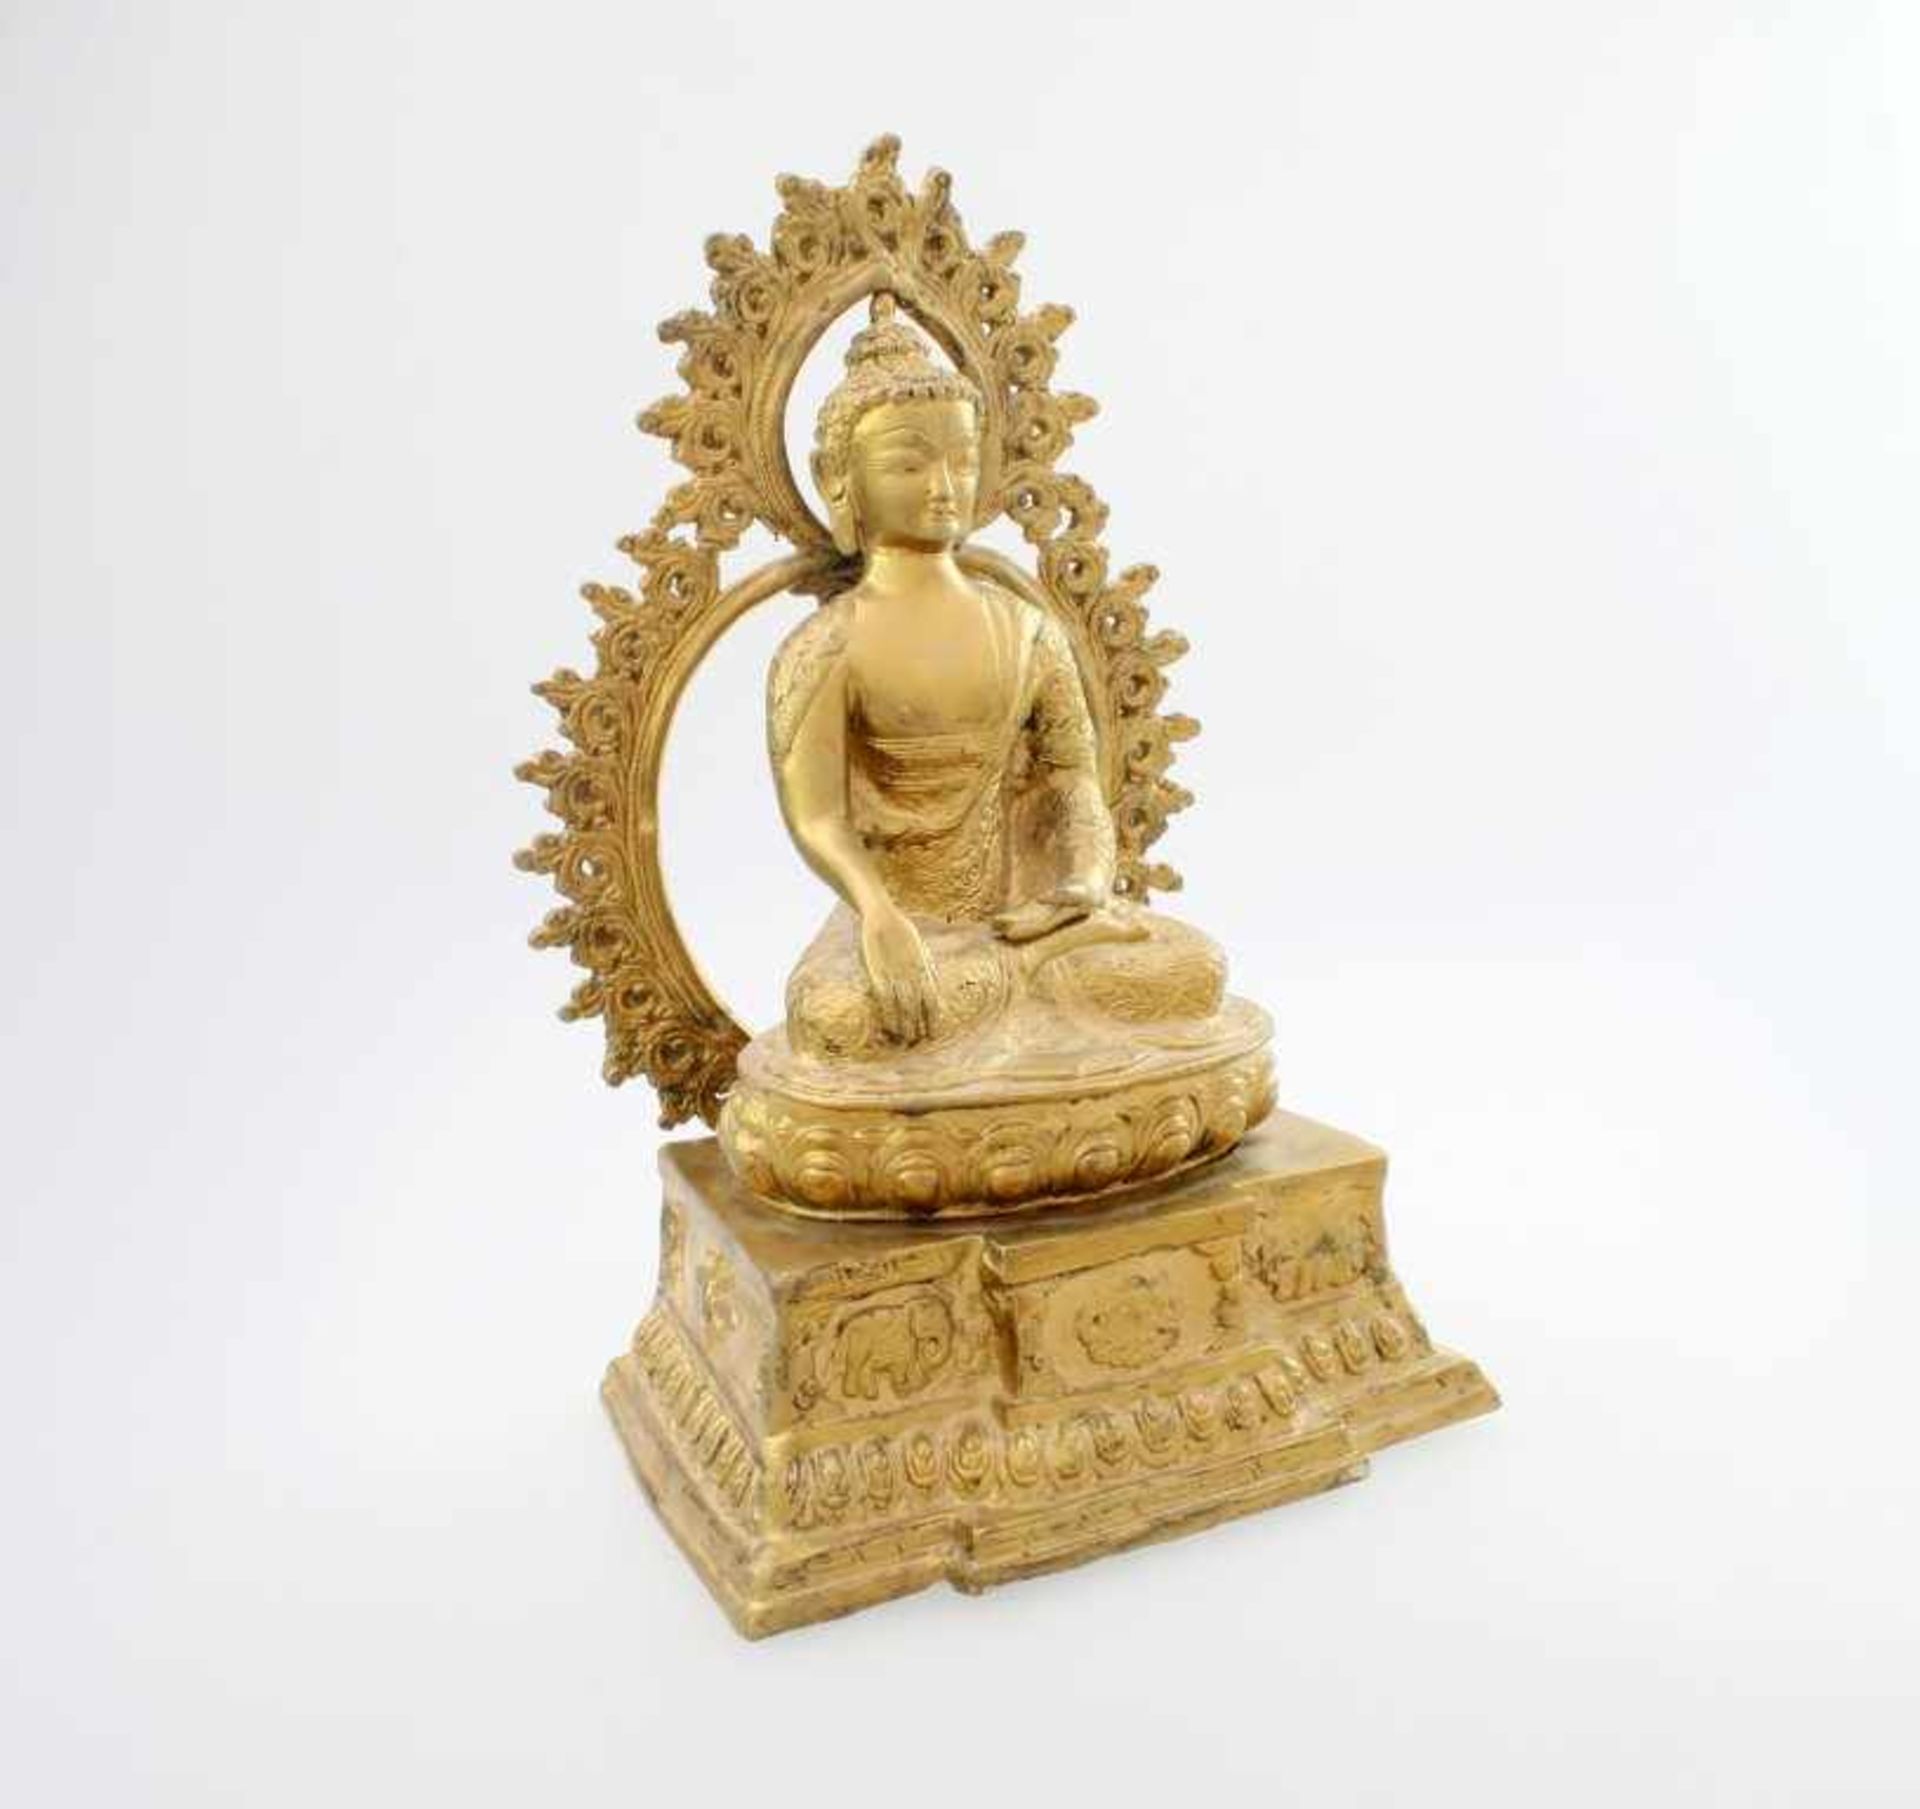 Buddha - Nordindien "Die Erde als Zeuge anrufend", aufsteckbare Korona, im Lotussitz, auf ovalem